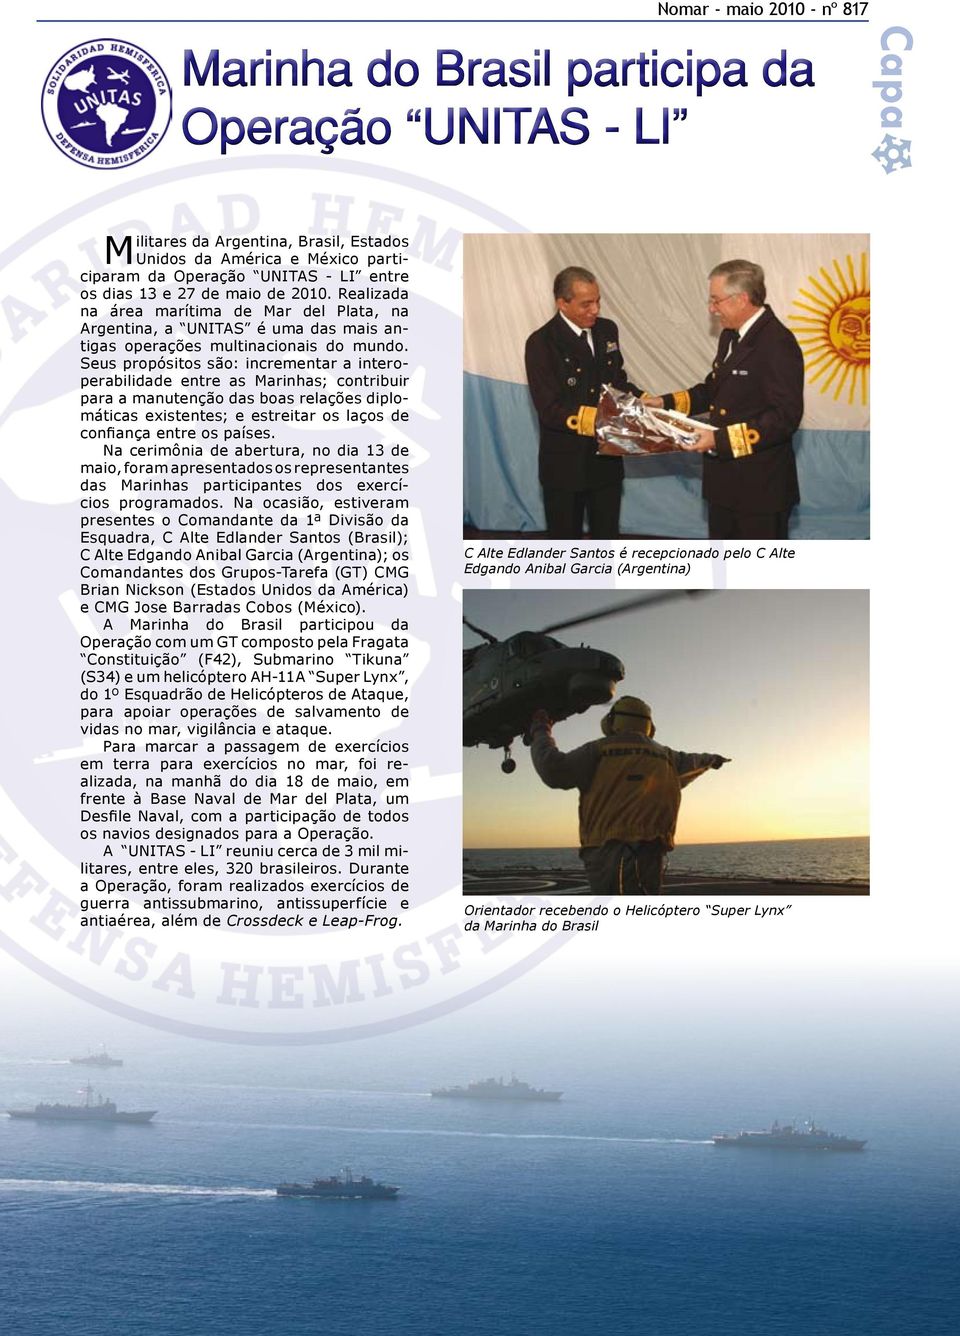 Seus propósitos são: incrementar a interoperabilidade entre as Marinhas; contribuir para a manutenção das boas relações diplomáticas existentes; e estreitar os laços de confiança entre os países.